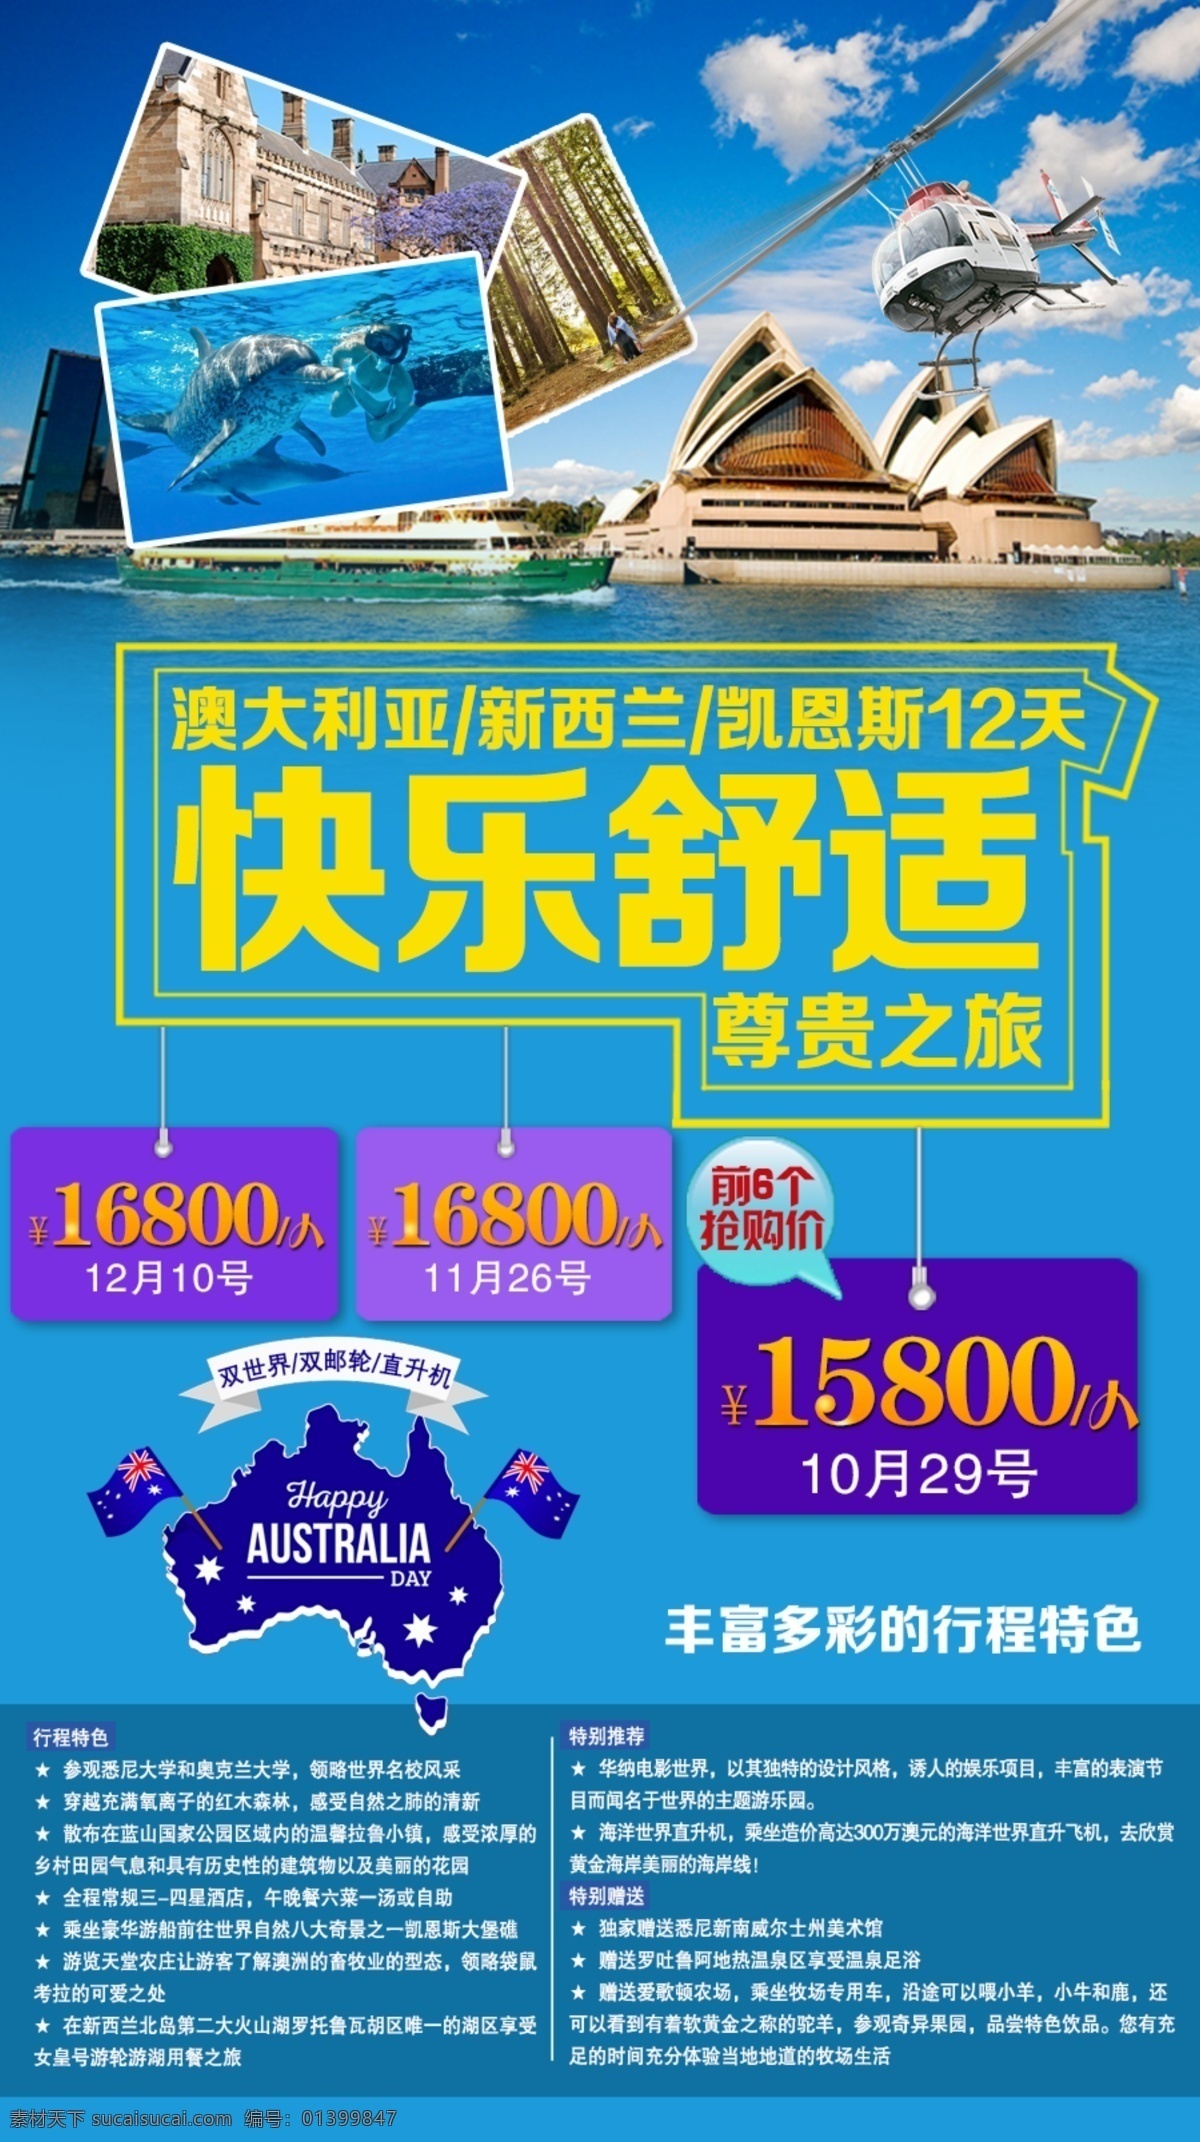 澳新 凯 宣传海报 澳新凯 澳大利亚 新西兰 新加坡 凯恩斯 欧洲 东欧 大洋洲 旅游 海报 尊享 高端 舒适 直升机 海洋 抢购 特价